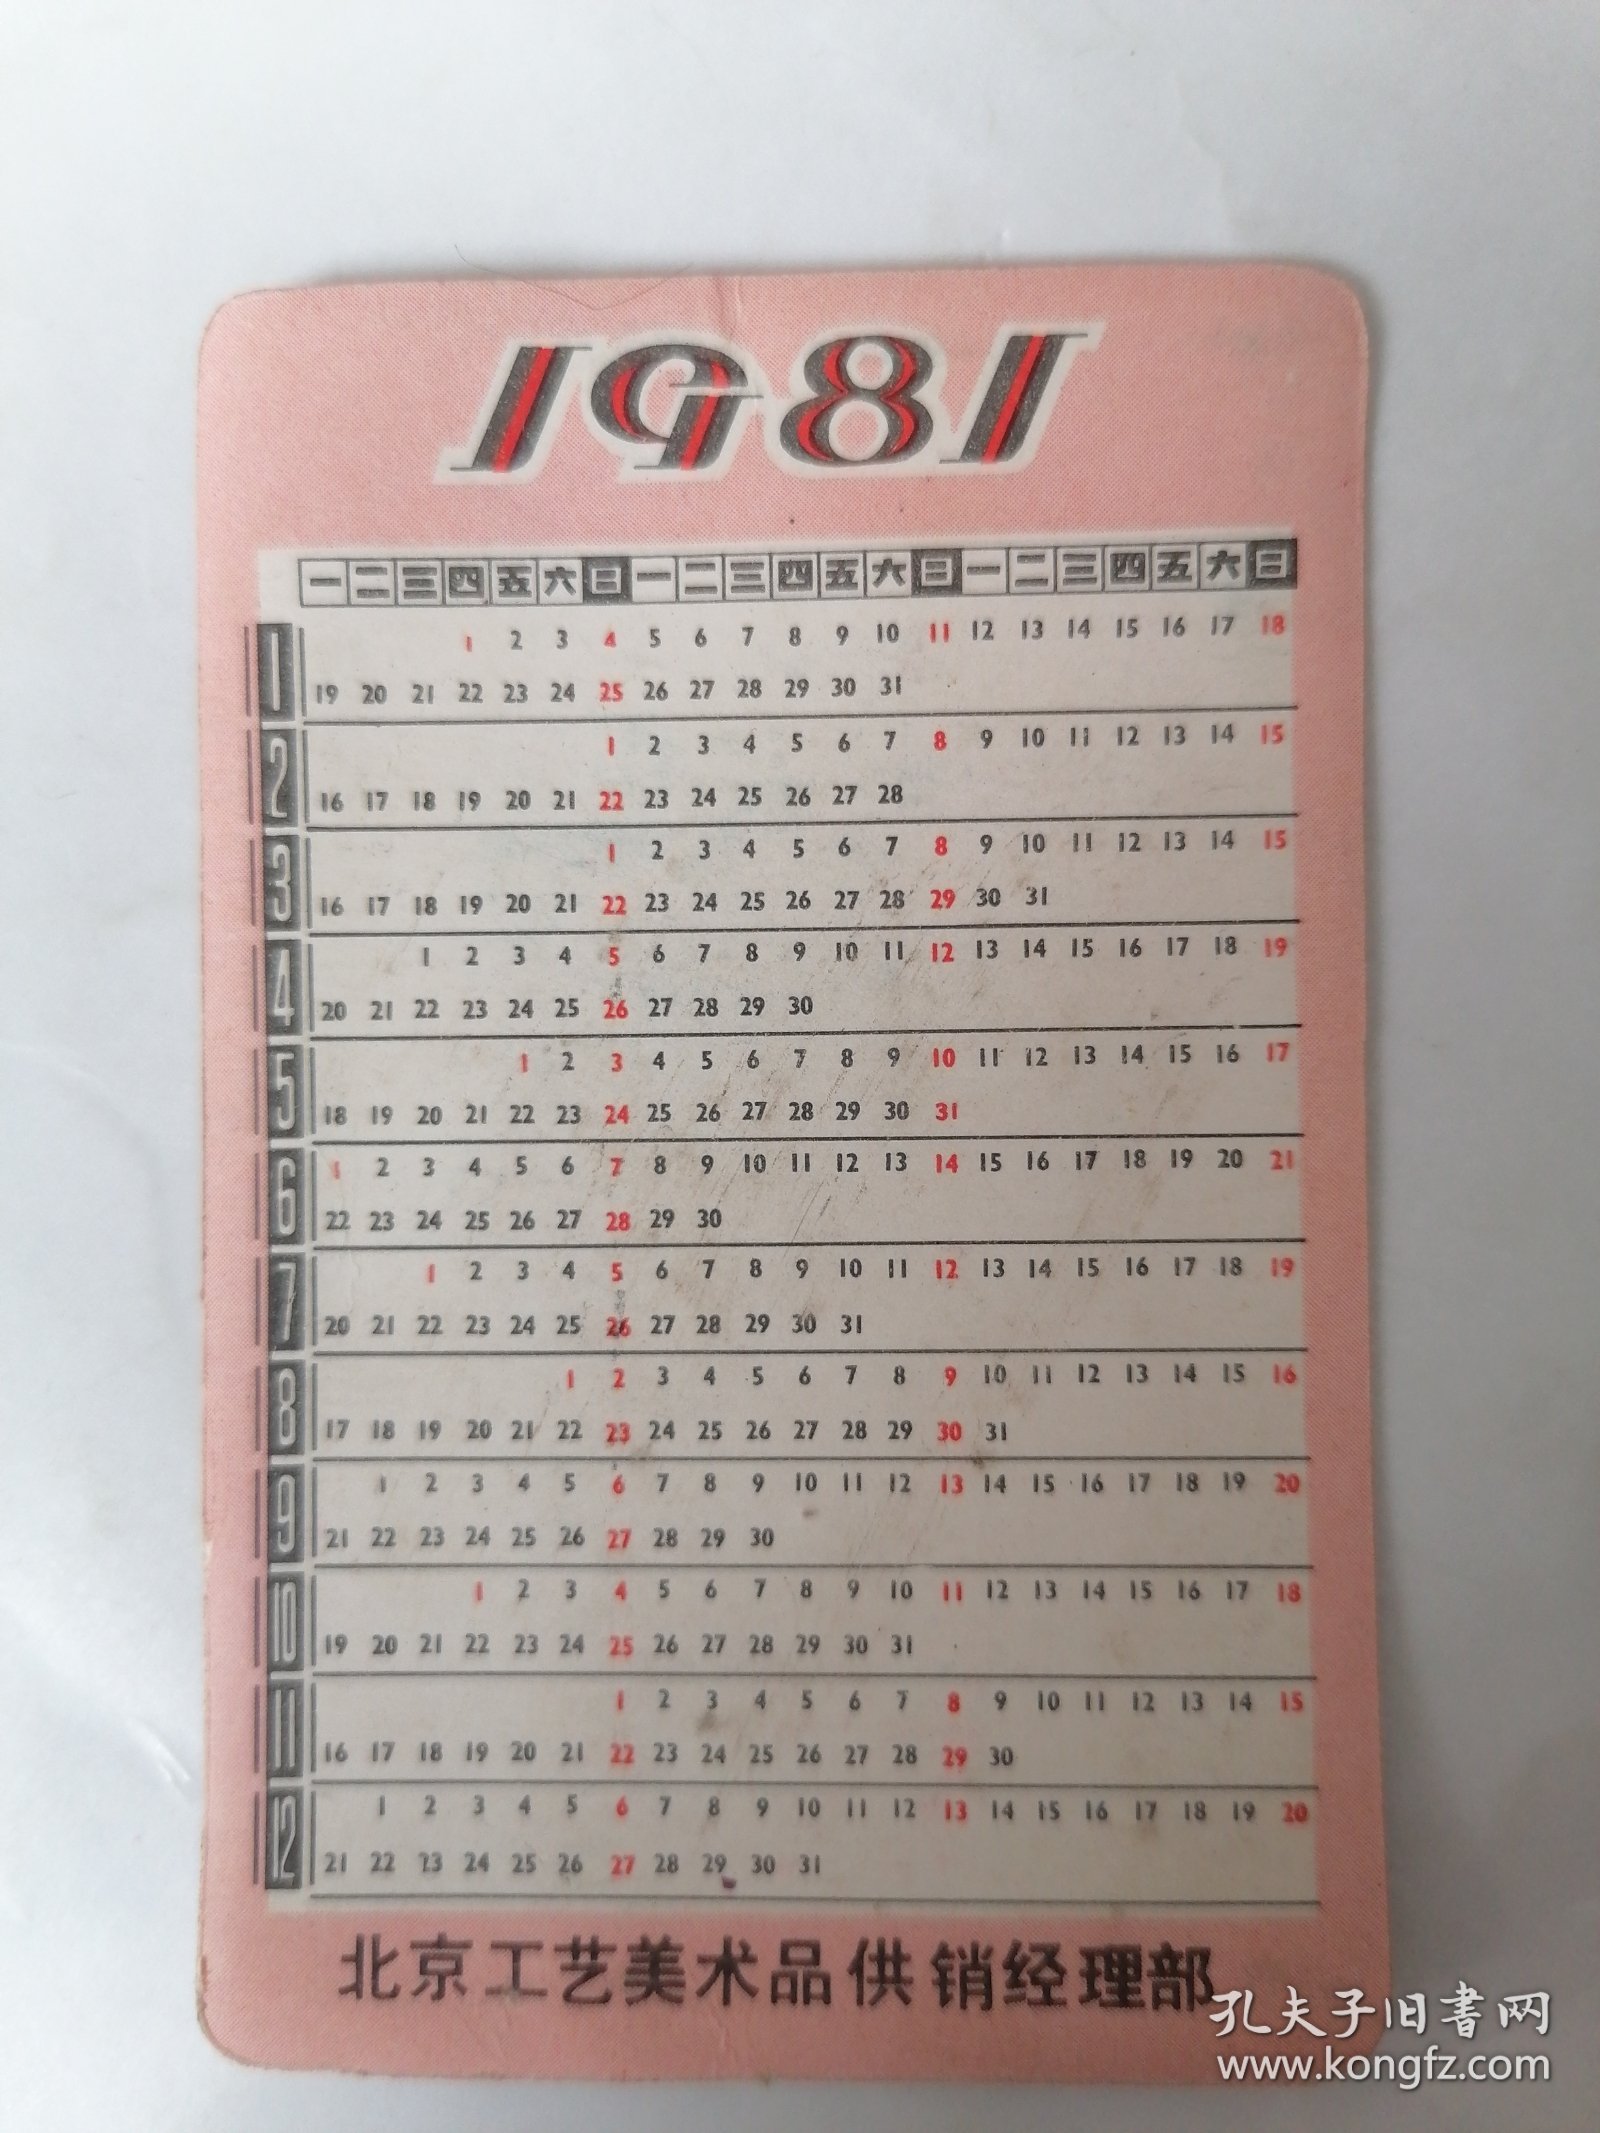 1981年日历卡